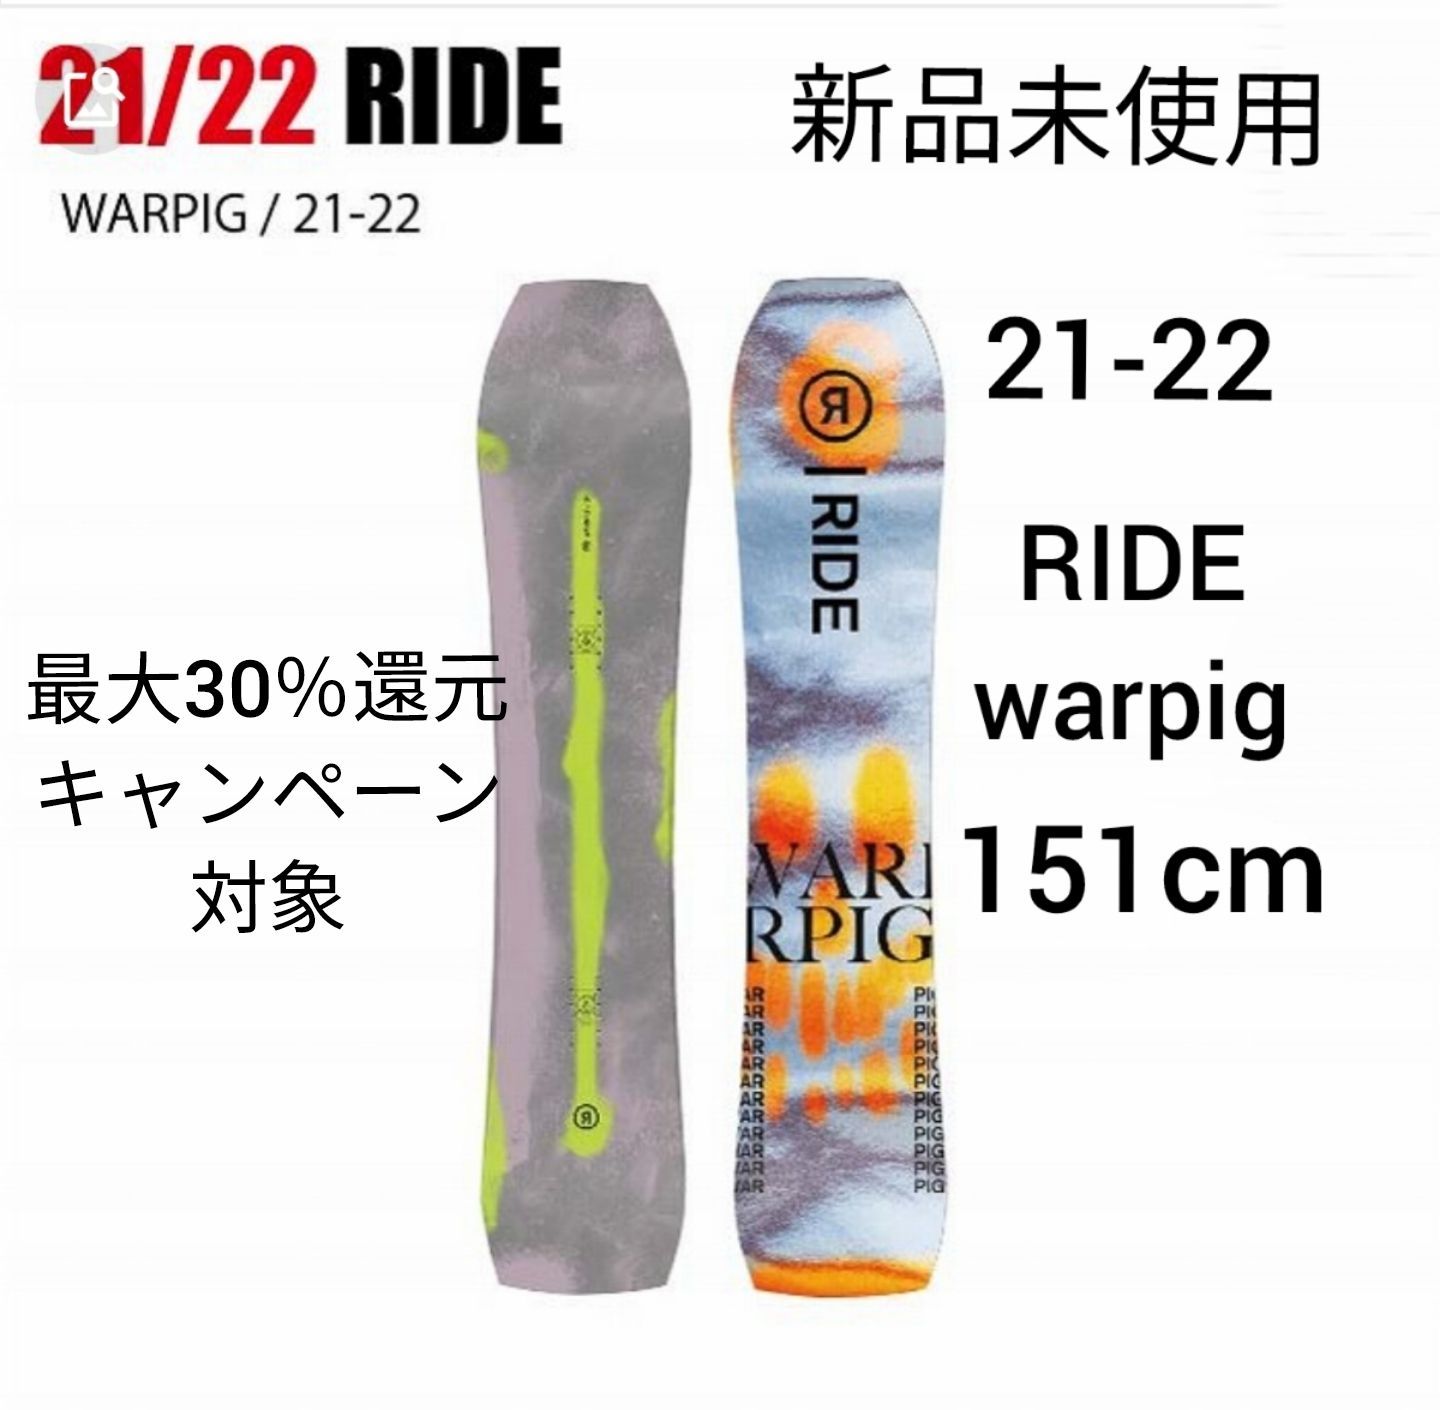 新品未使用☆21-22 RIDE warpig 151cm ライド ワーピグ - メルカリ